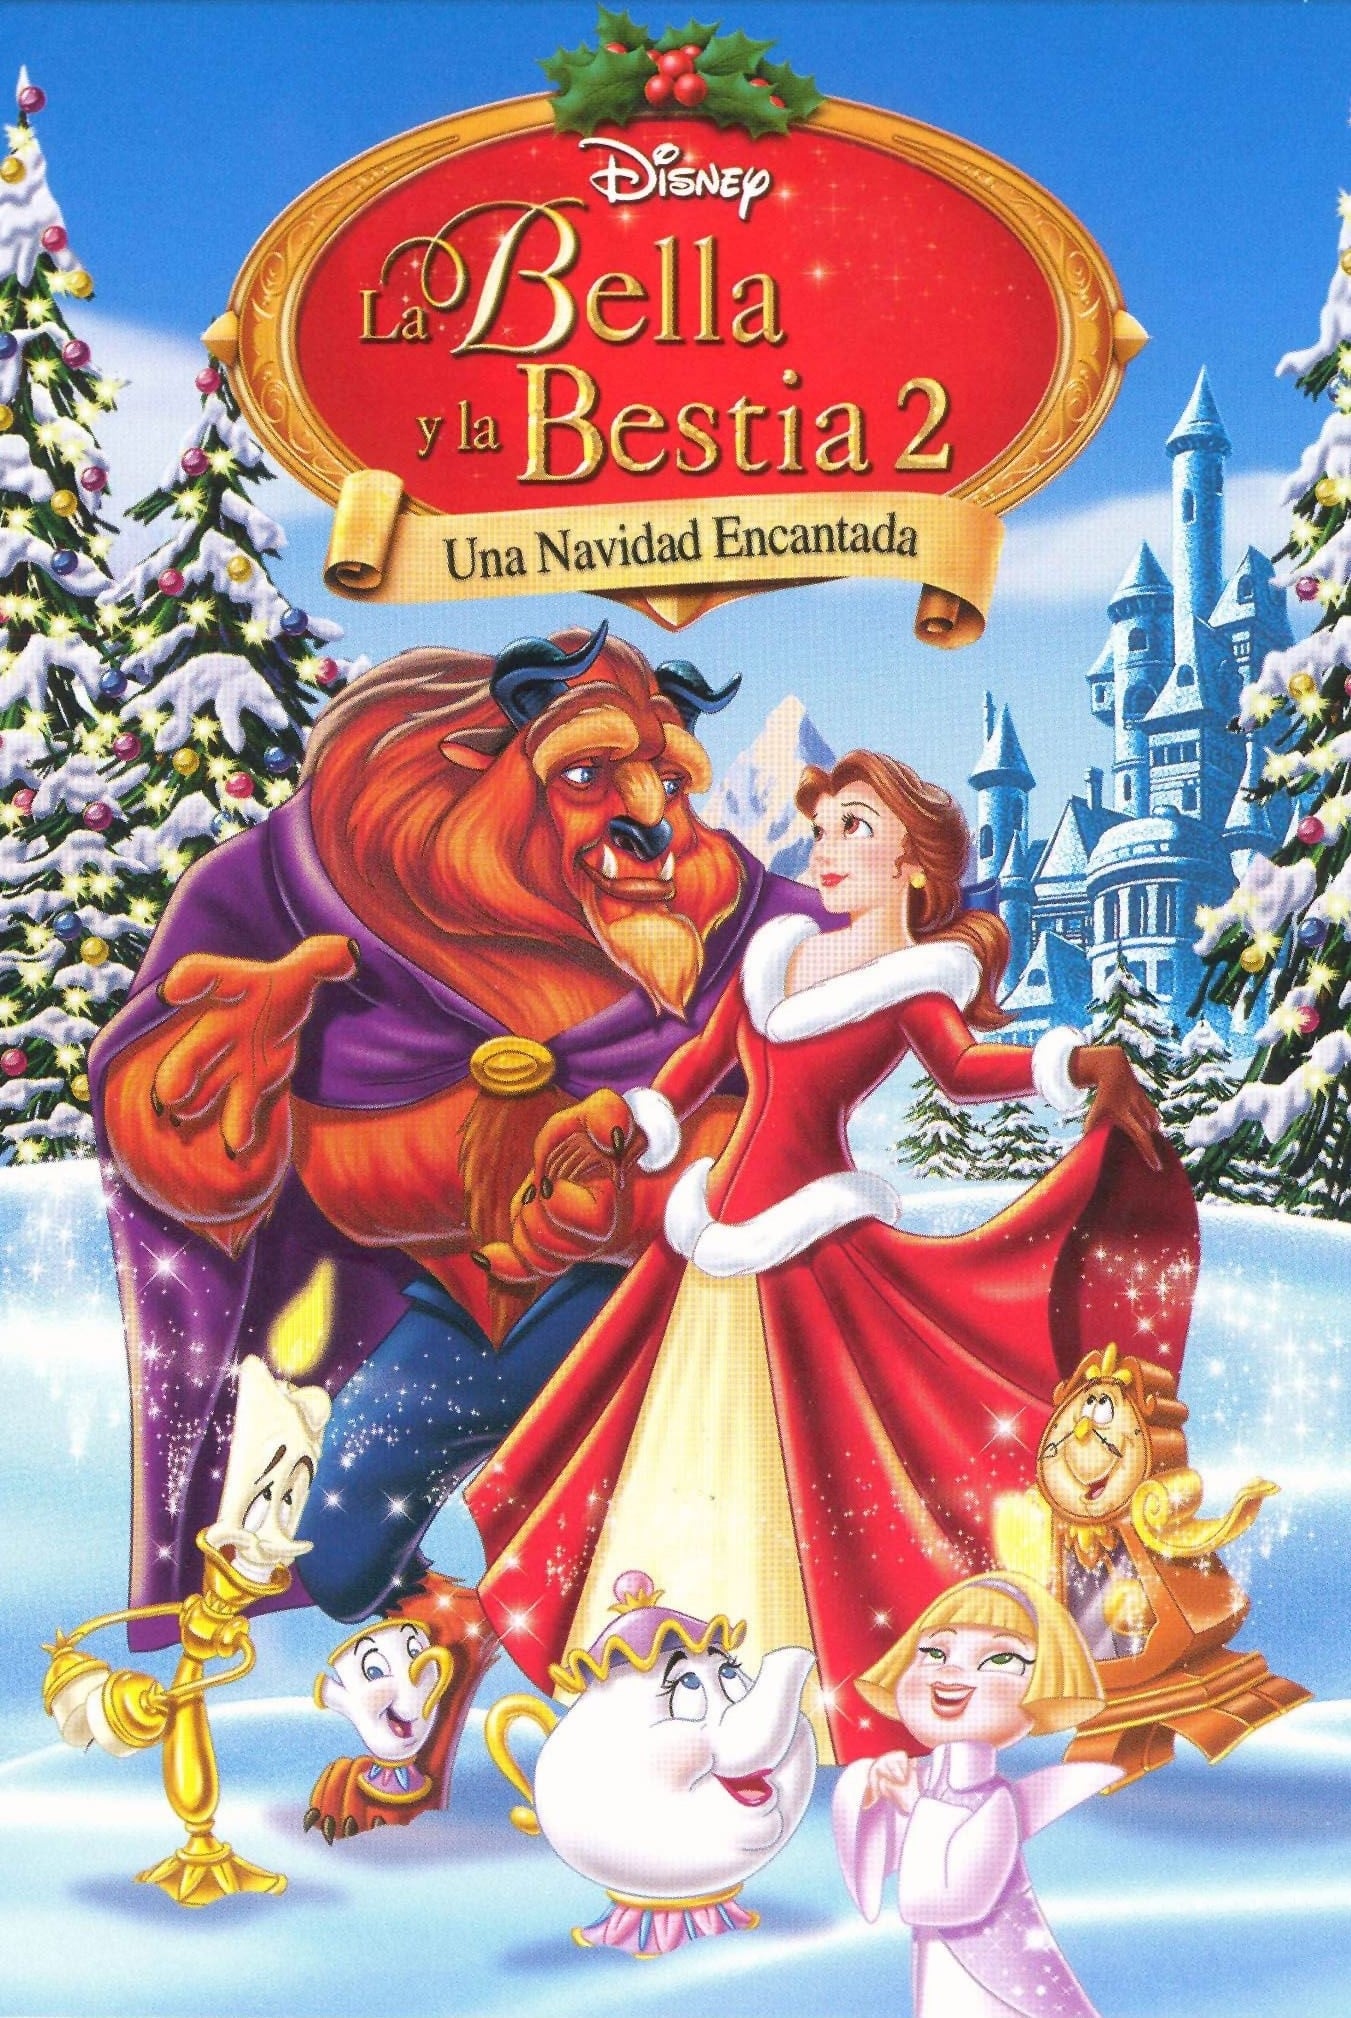 La bella y la bestia Una navidad encantada (1997) Ver online